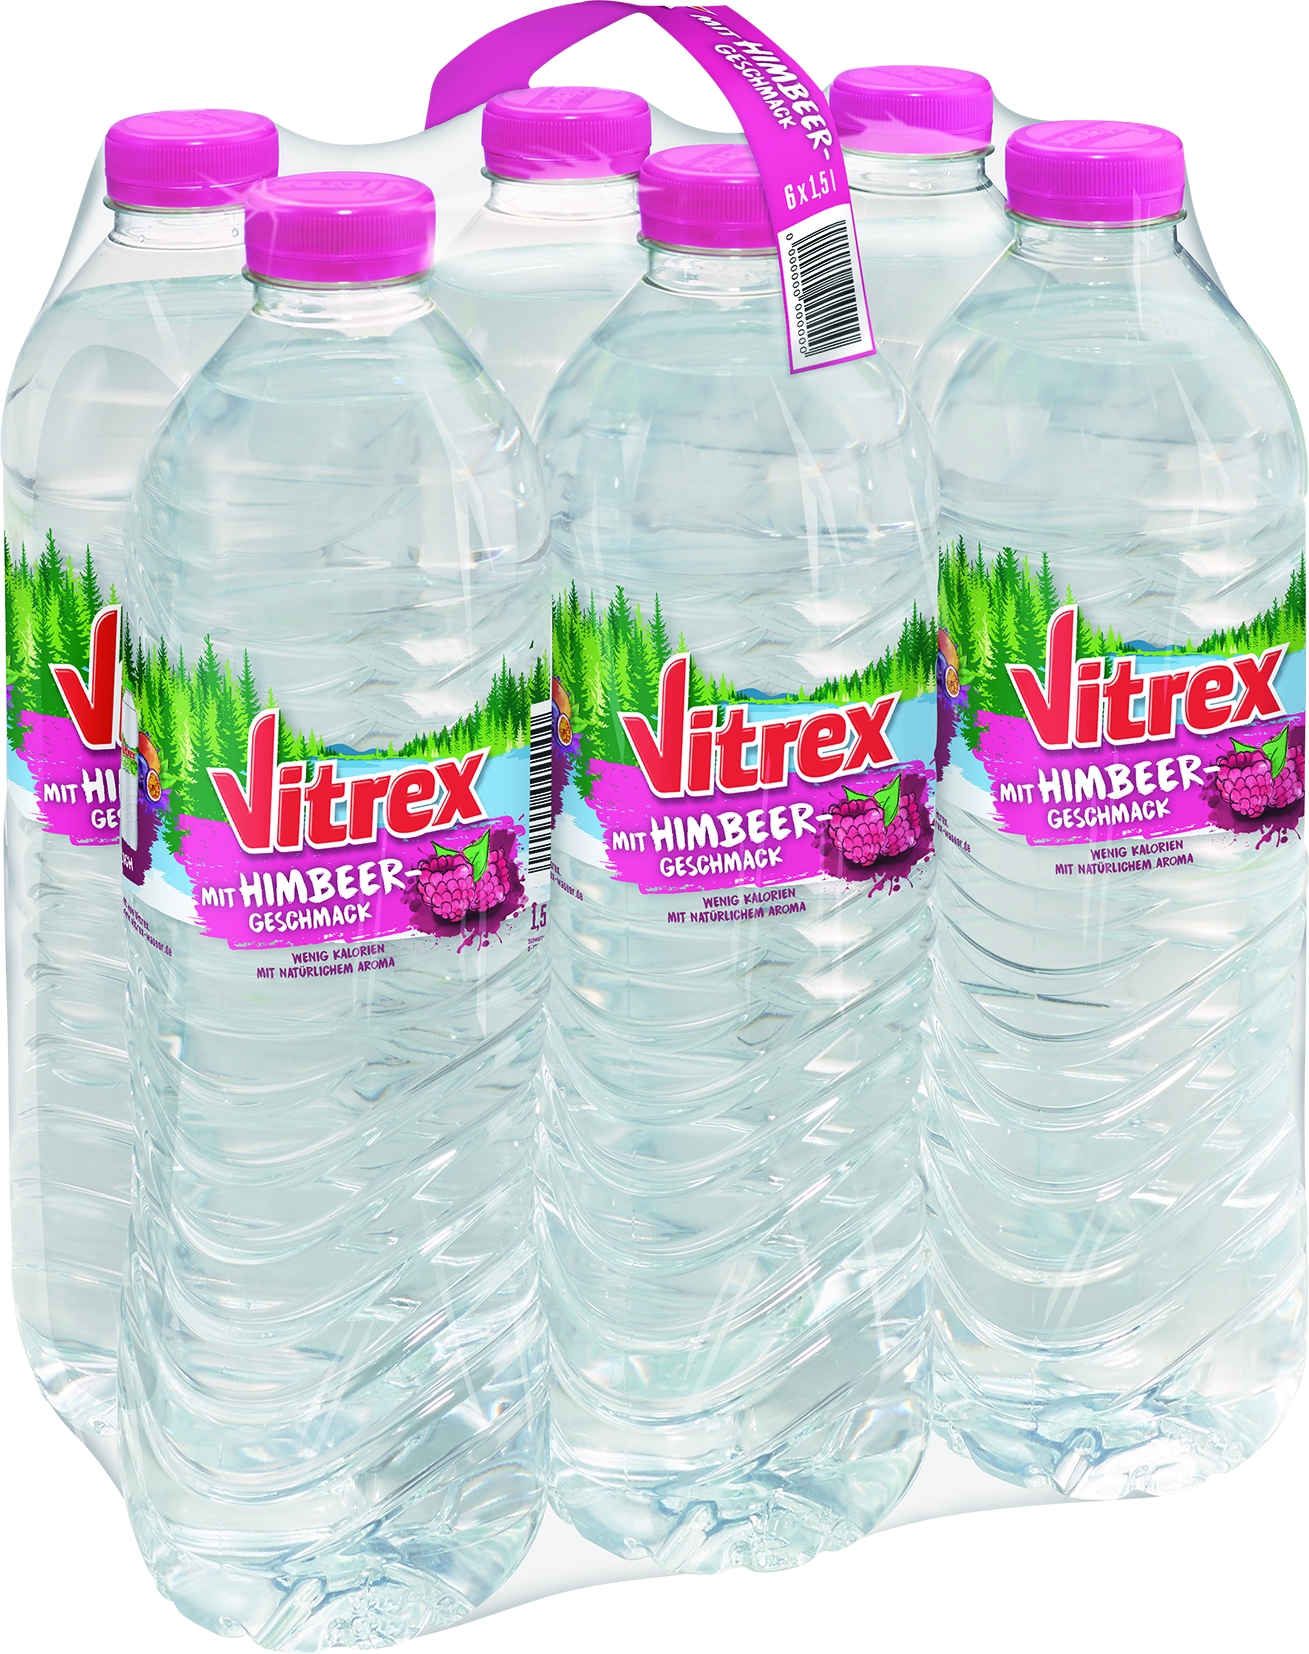 Mineralwasser mit Himbeer   